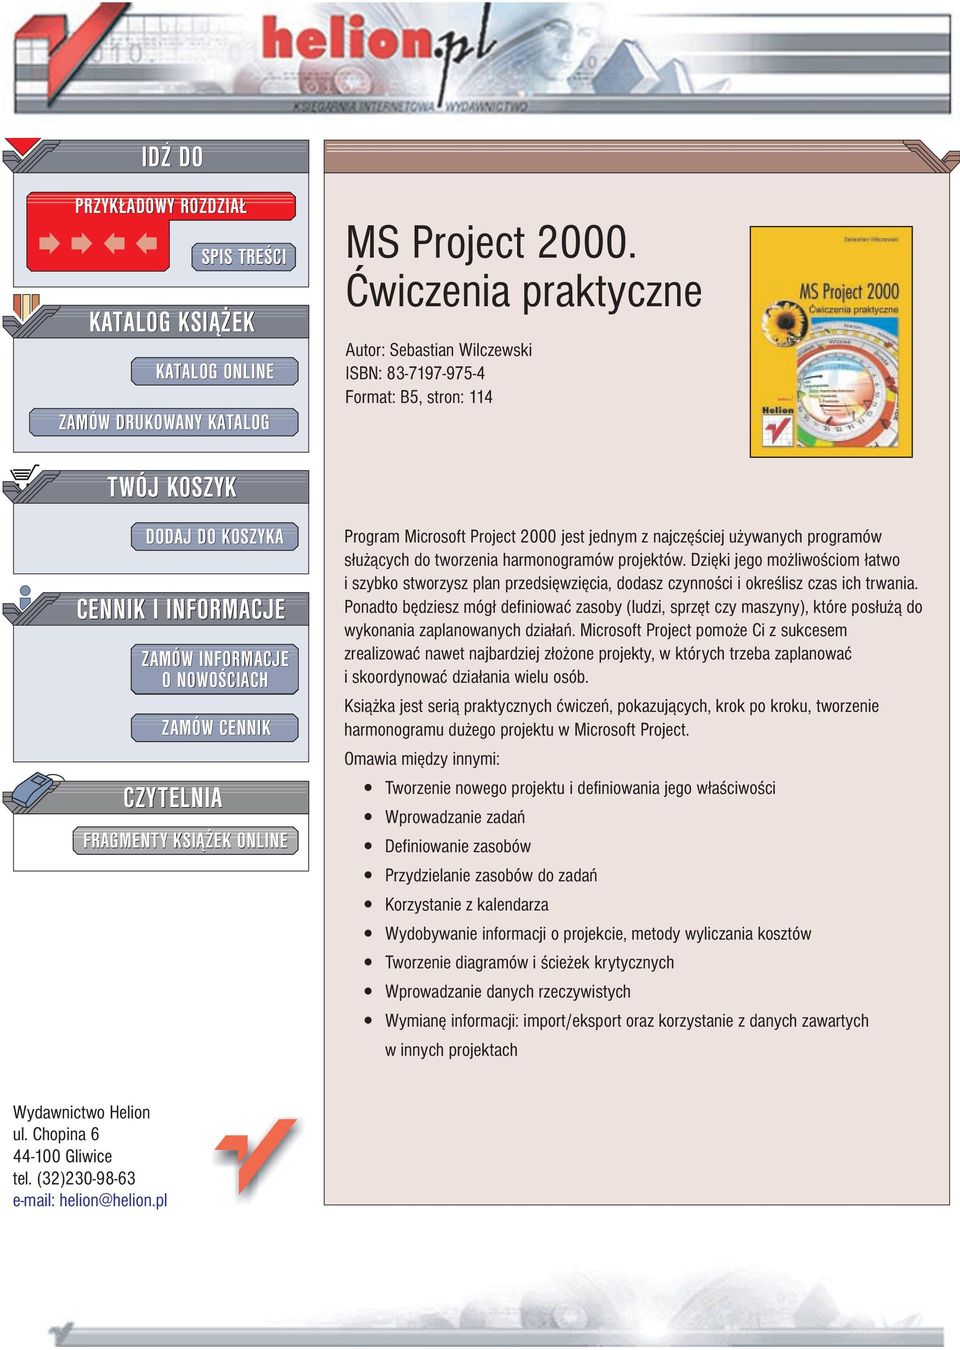 FRAGMENTY KSI EK ONLINE Program Microsoft Project 2000 jest jednym z najczê ciej u ywanych programów s³u ¹cych do tworzenia harmonogramów projektów.